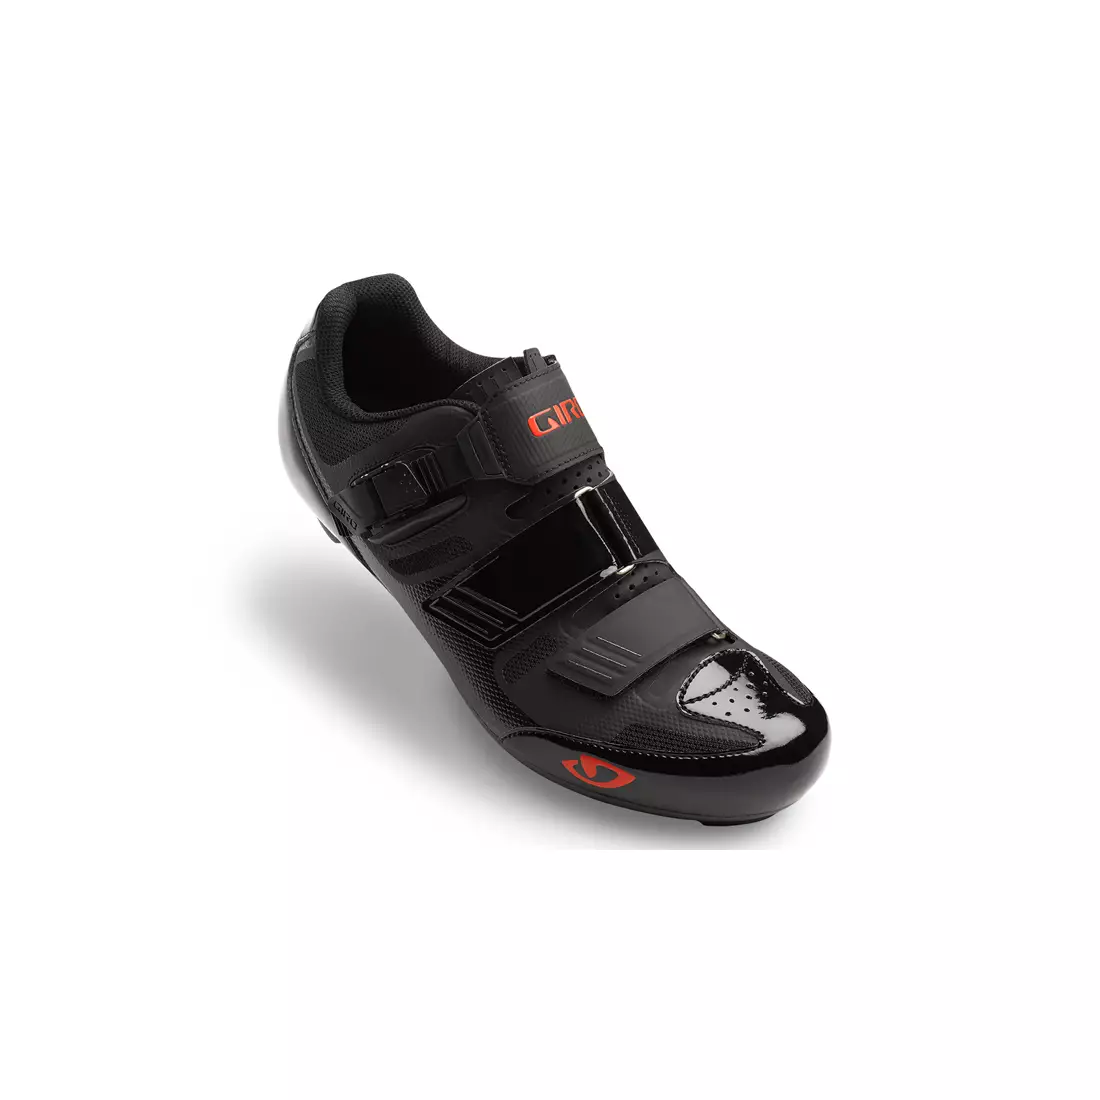 Pánska cyklistická obuv GIRO APECKX II HV+ black bright red 